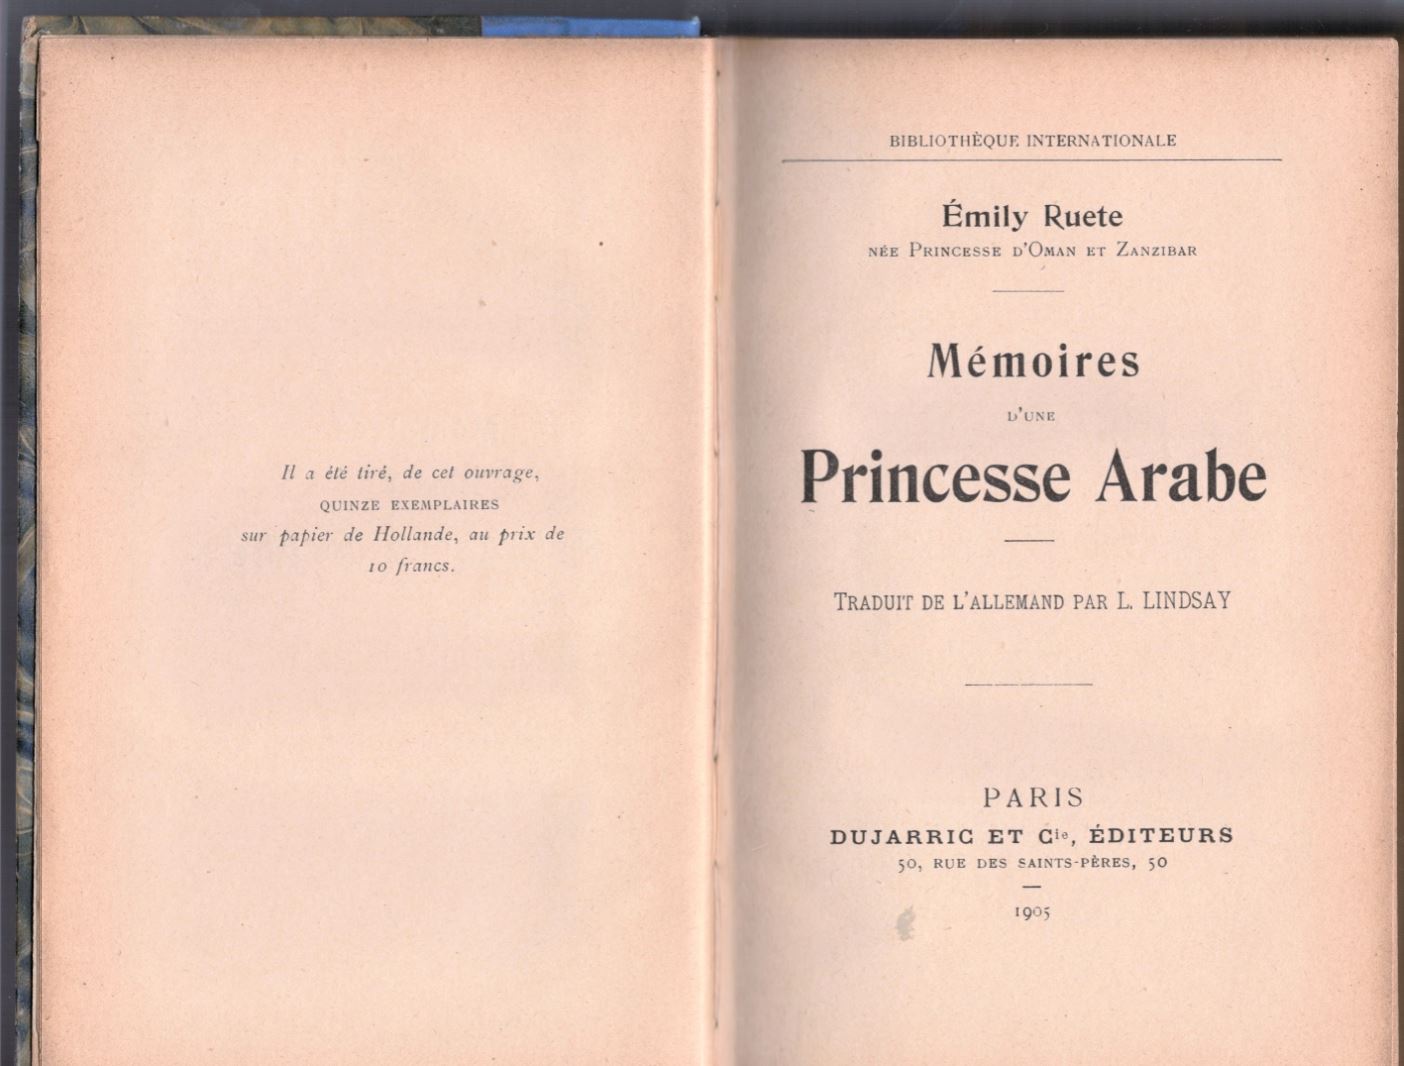 Mremoires d'une Princesse Arabe 1905